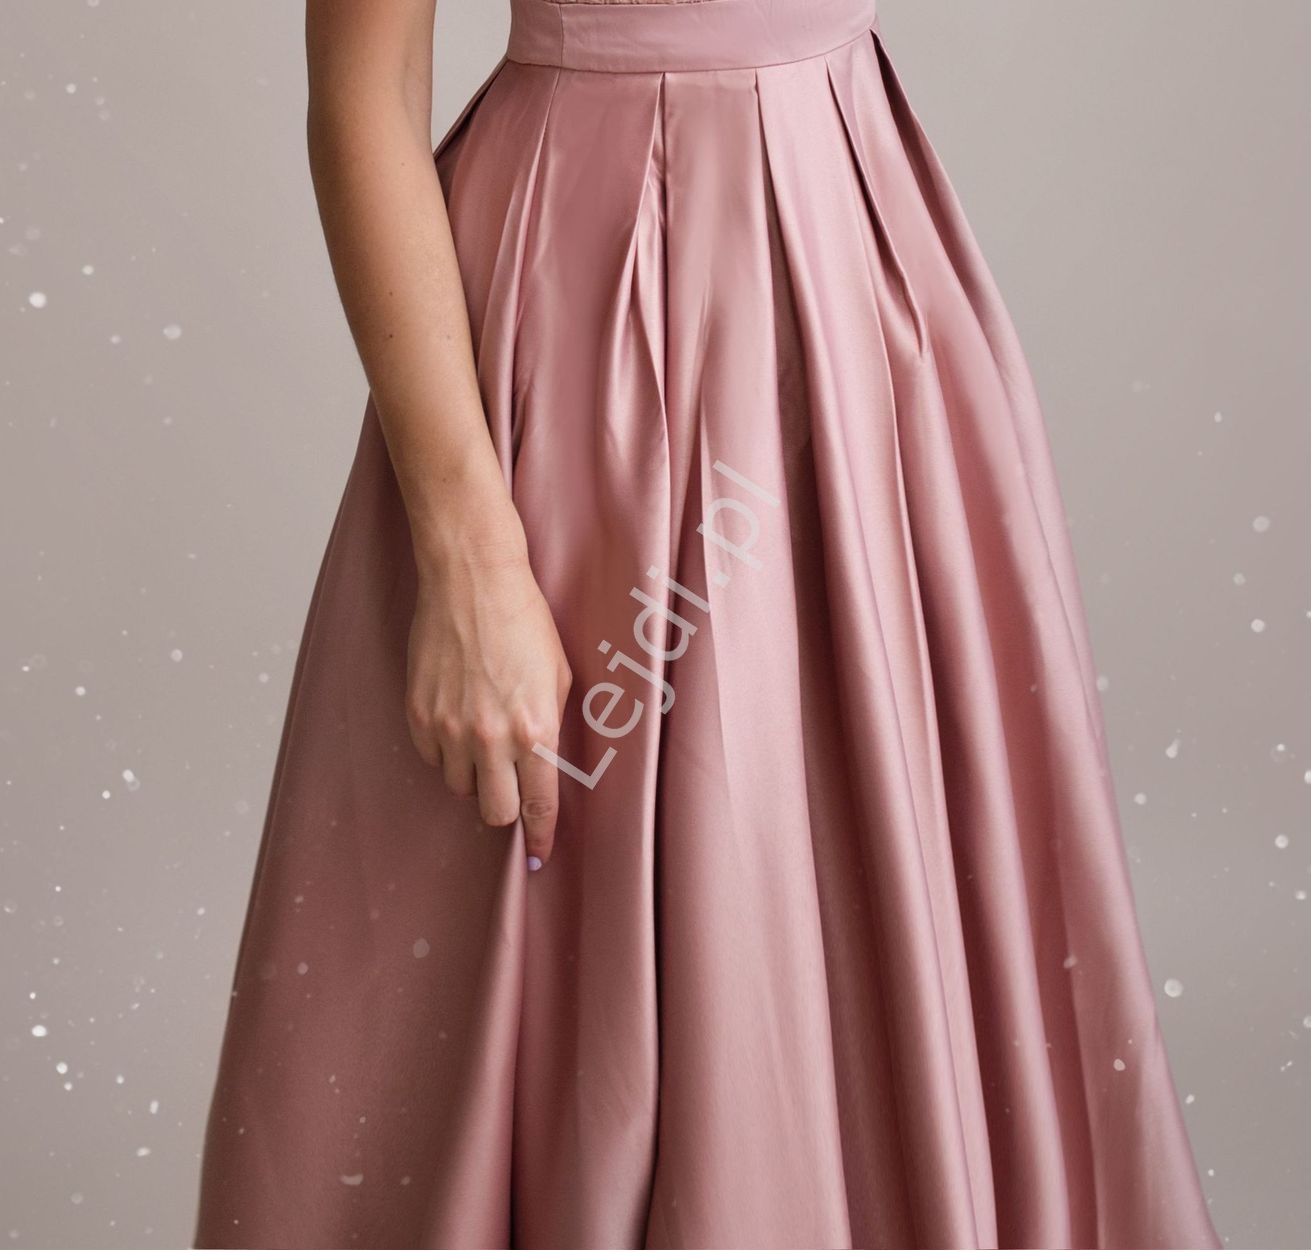 Satynowa suknia wieczorowa z wyeksponowanymi plecami - brudny róż 2168